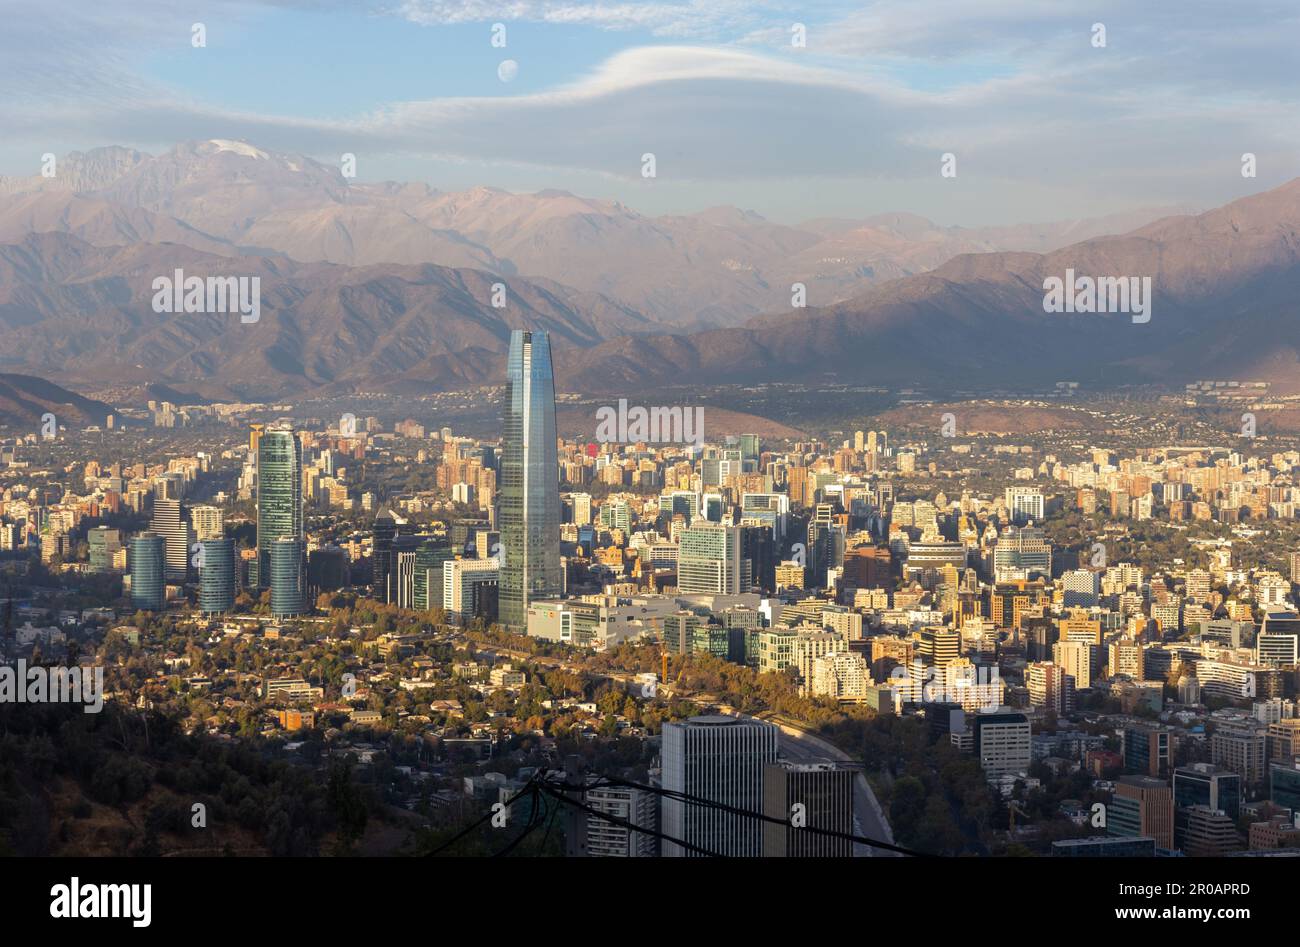 Santiago Chili vue panoramique aérienne Cerro Cristobal Hill célèbre Costanera Tower City Skyline. Pleine lune s'élevant au-dessus des Andes lointaines montagnes arrière-plan Banque D'Images